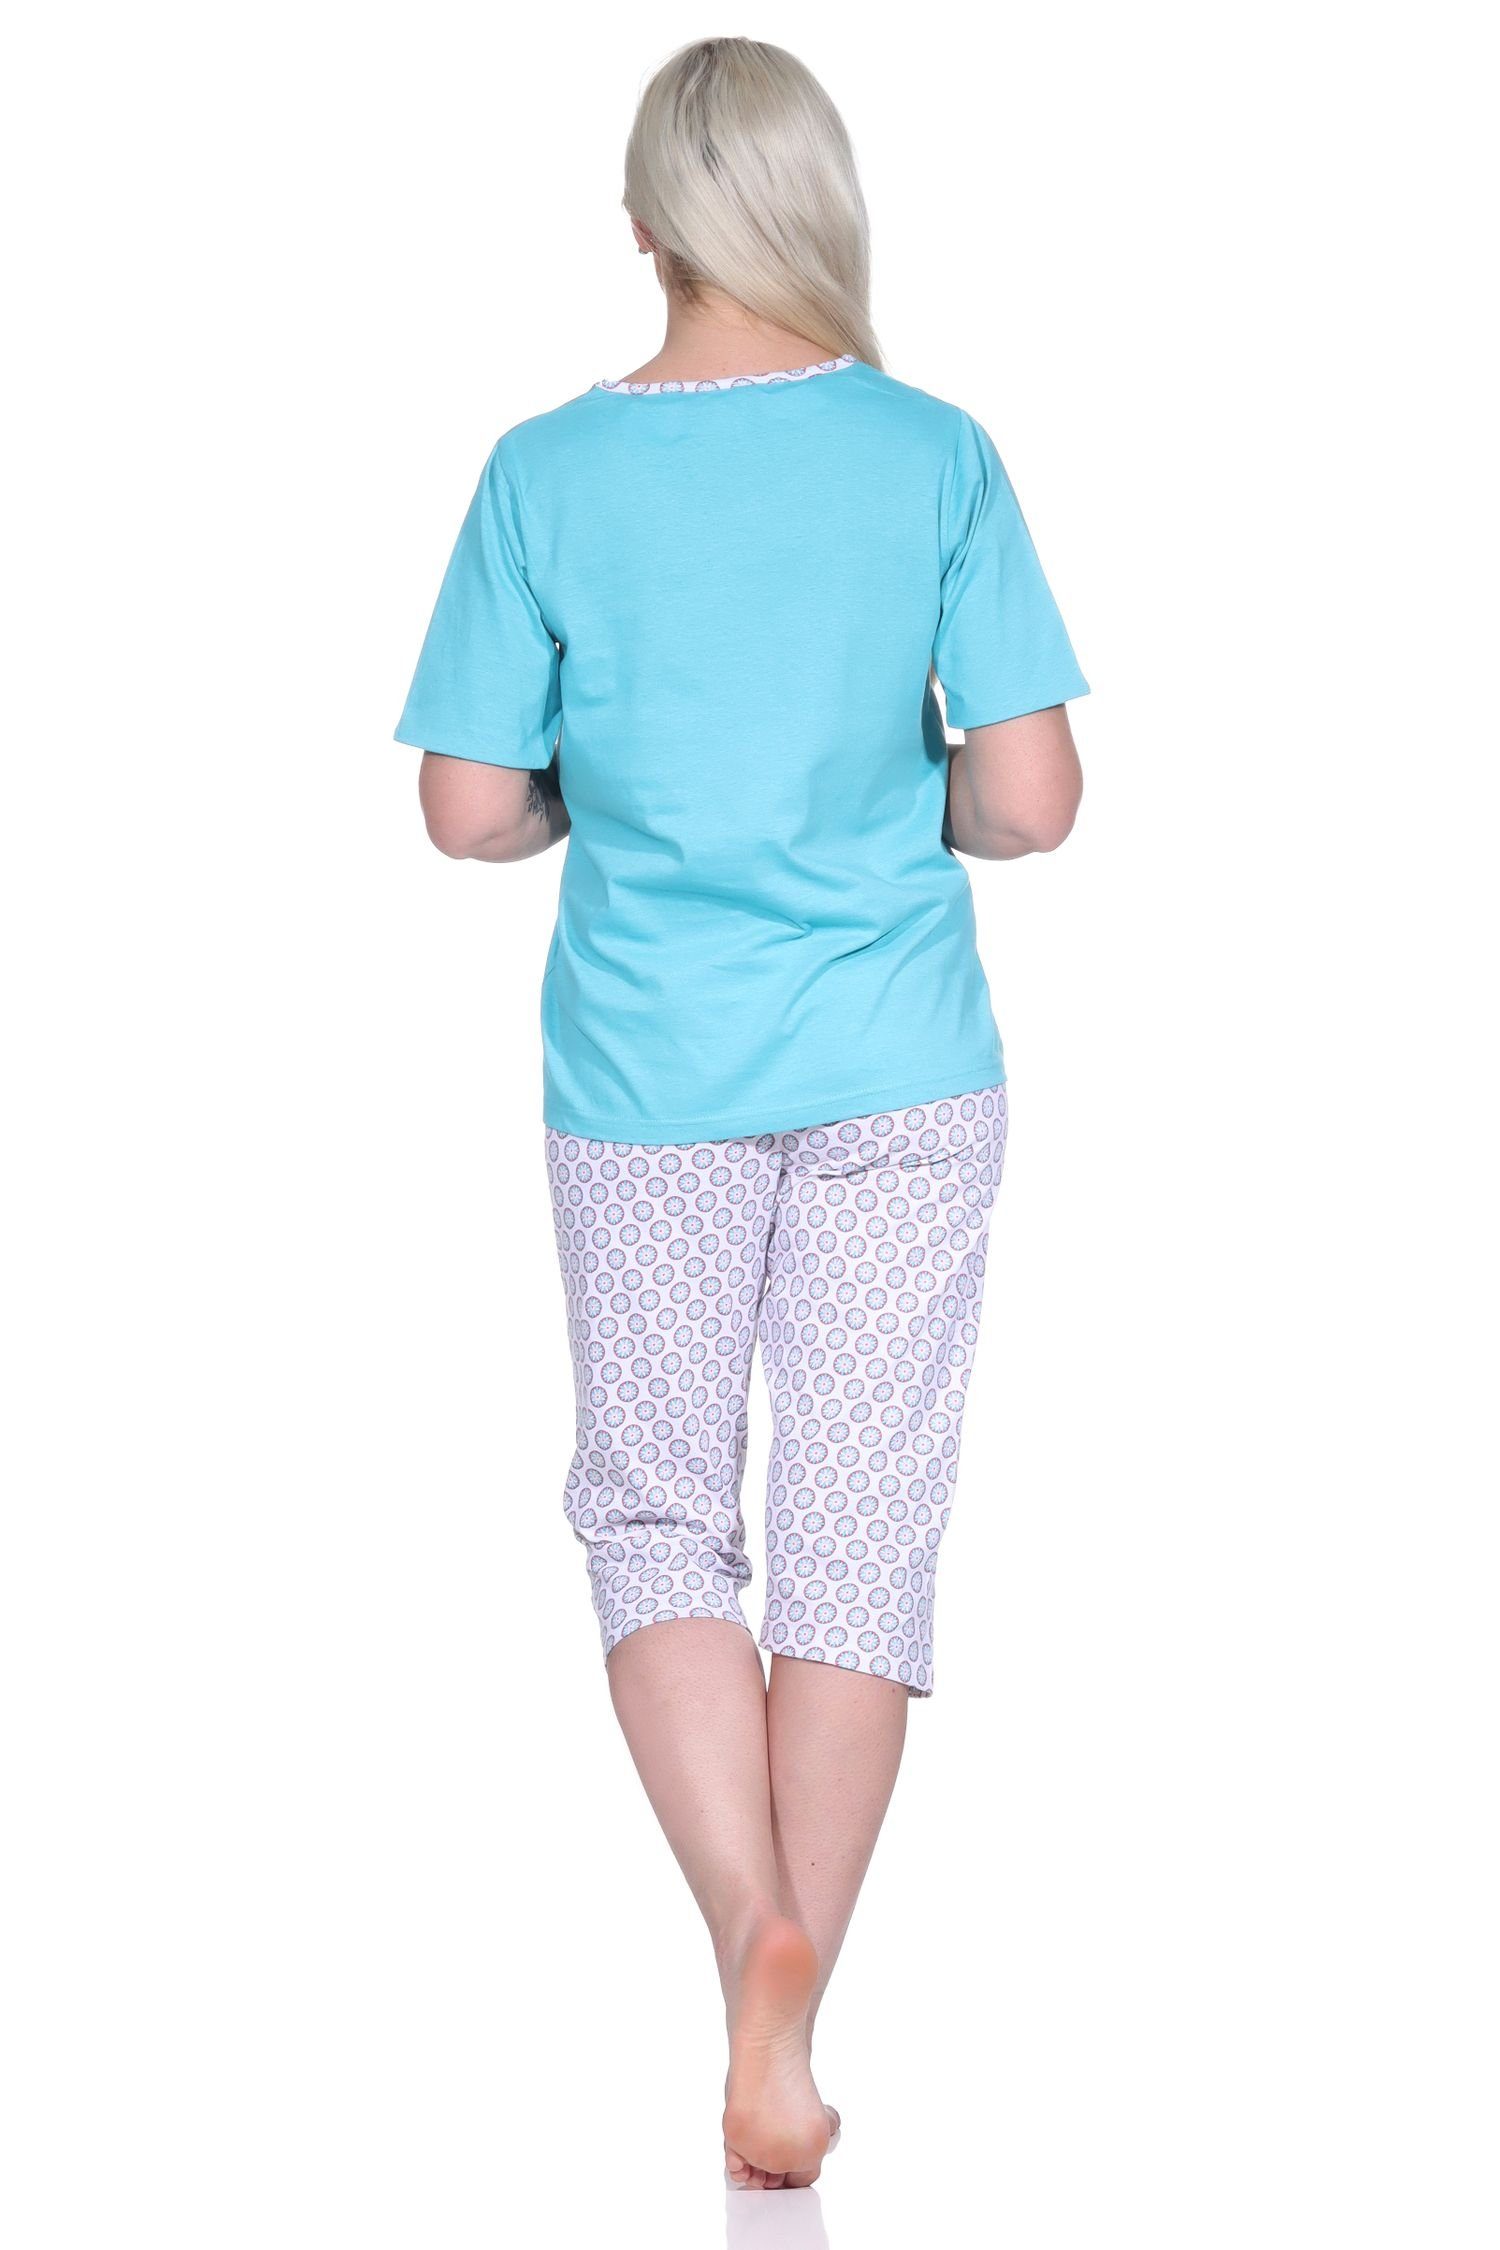 Blümchen-Muster Schlafanzug Pyjama türkis Pyjama Damen Normann und mit Caprihose Capri,